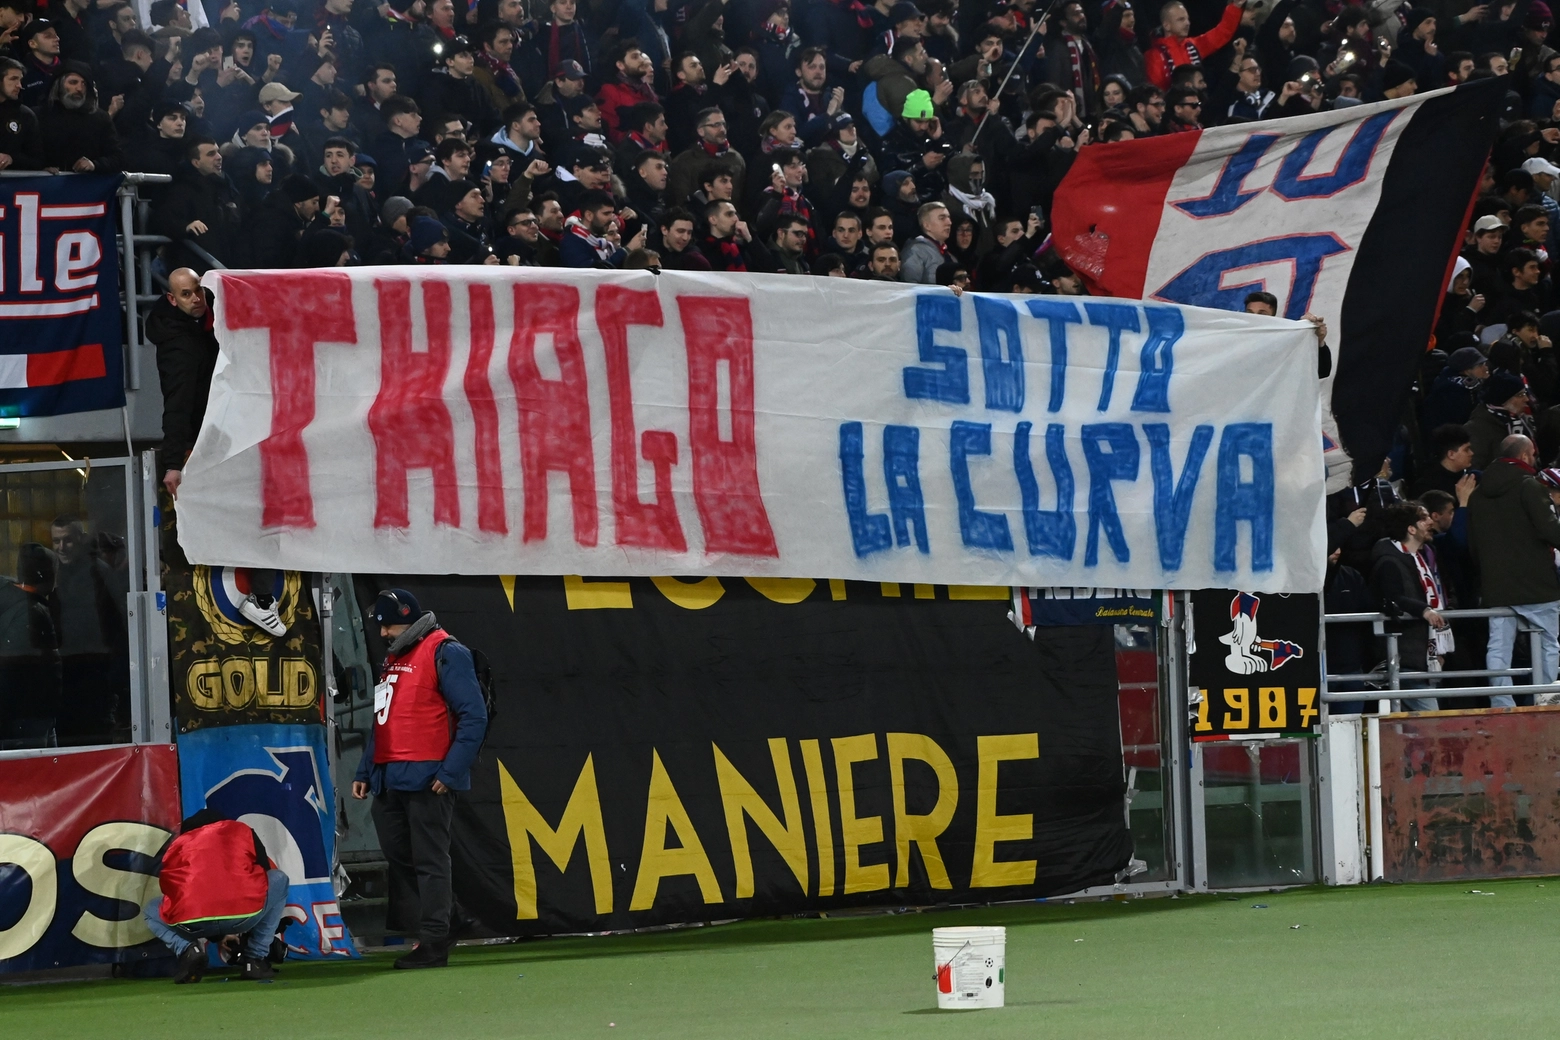 L'invito della curva Andrea Costa a Thiago Motta al termine della partita contro il Verona (FotoSchicchi)